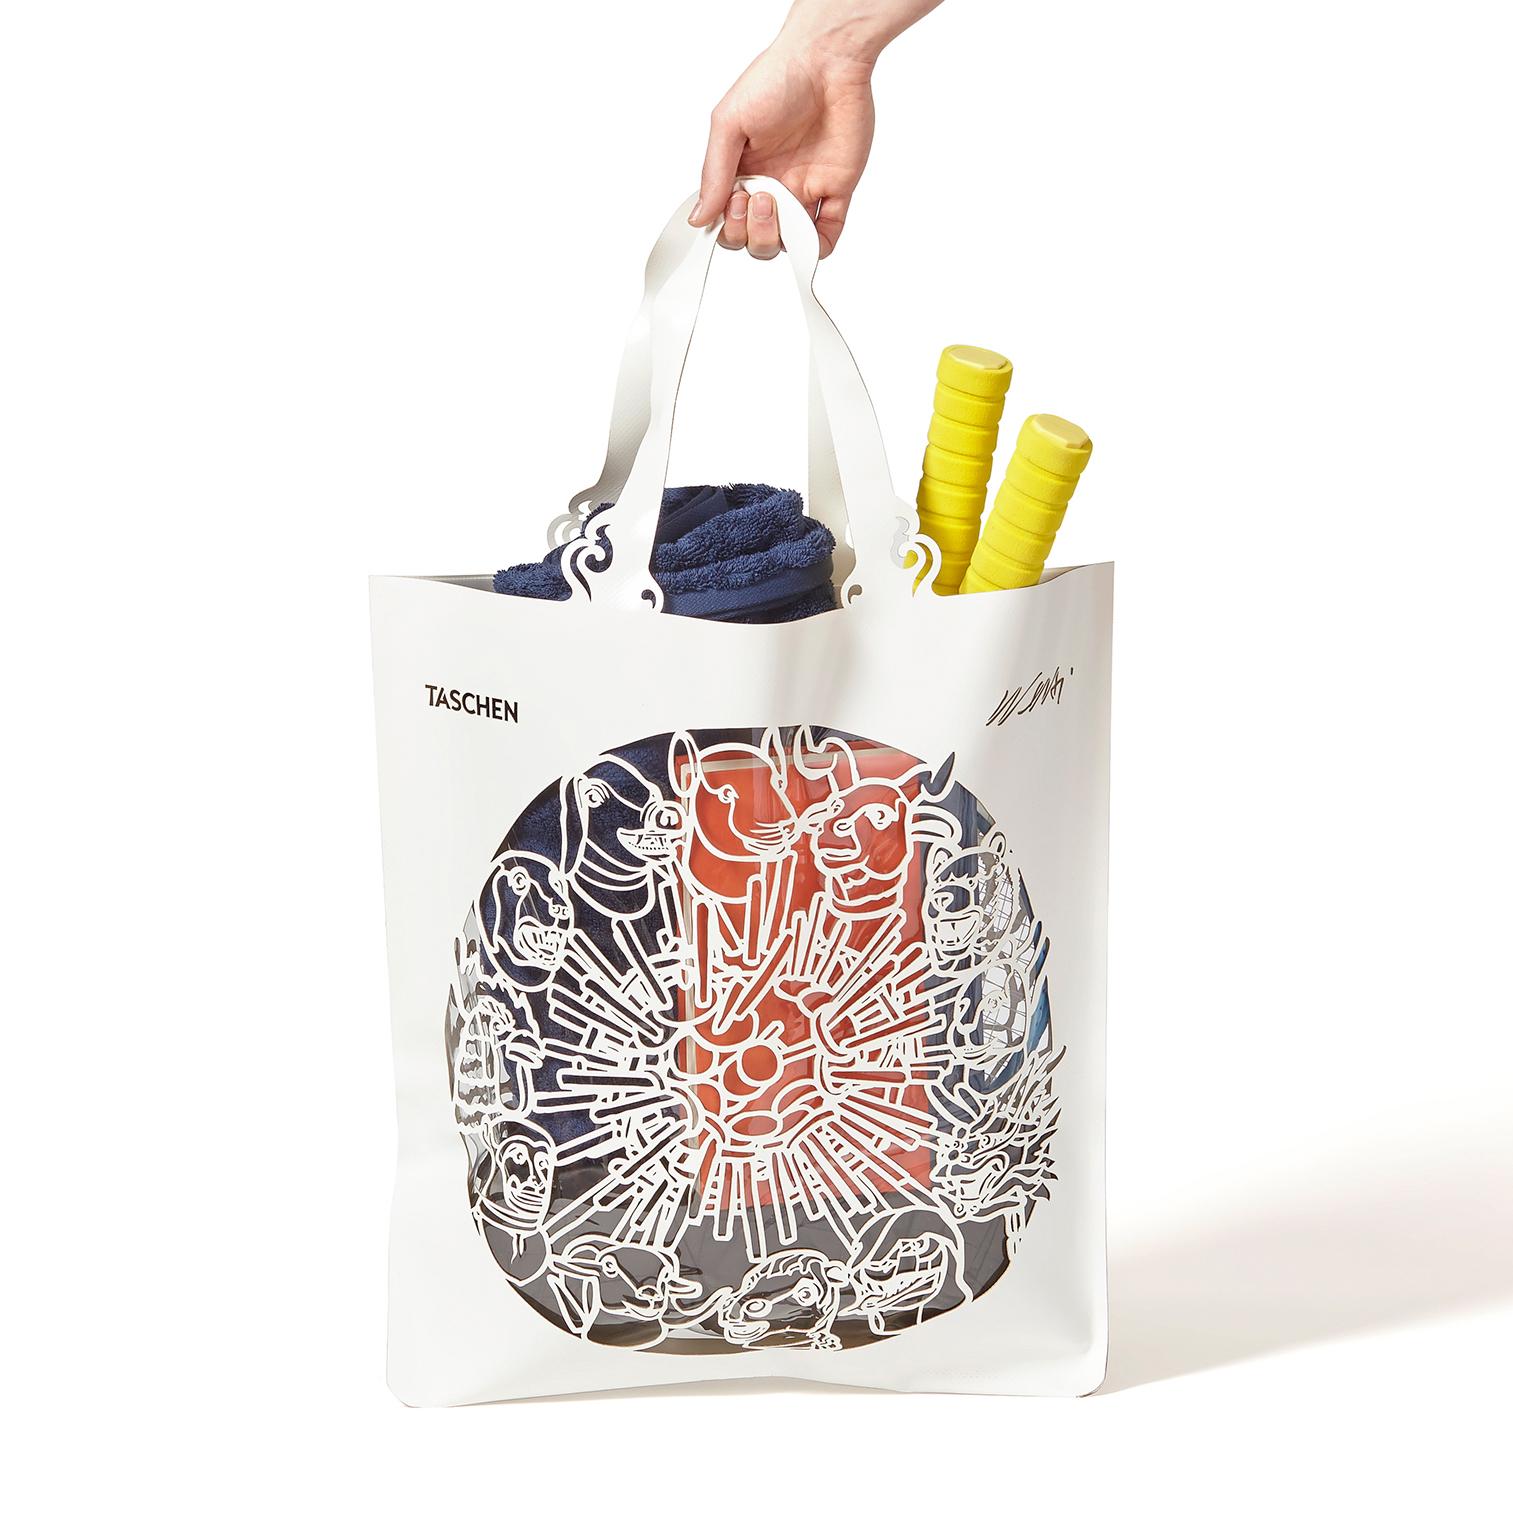 Sachet en PVC blanc avec insert transparent
Mesures : 18.5 x 25.4 pouces (sans les poignées)
Edition de 2,500
Boîte cadeau personnalisée

Ce sac à main en édition limitée d'Ai Weiwei est à la fois le sac à main idéal pour aller de la plage au dîner